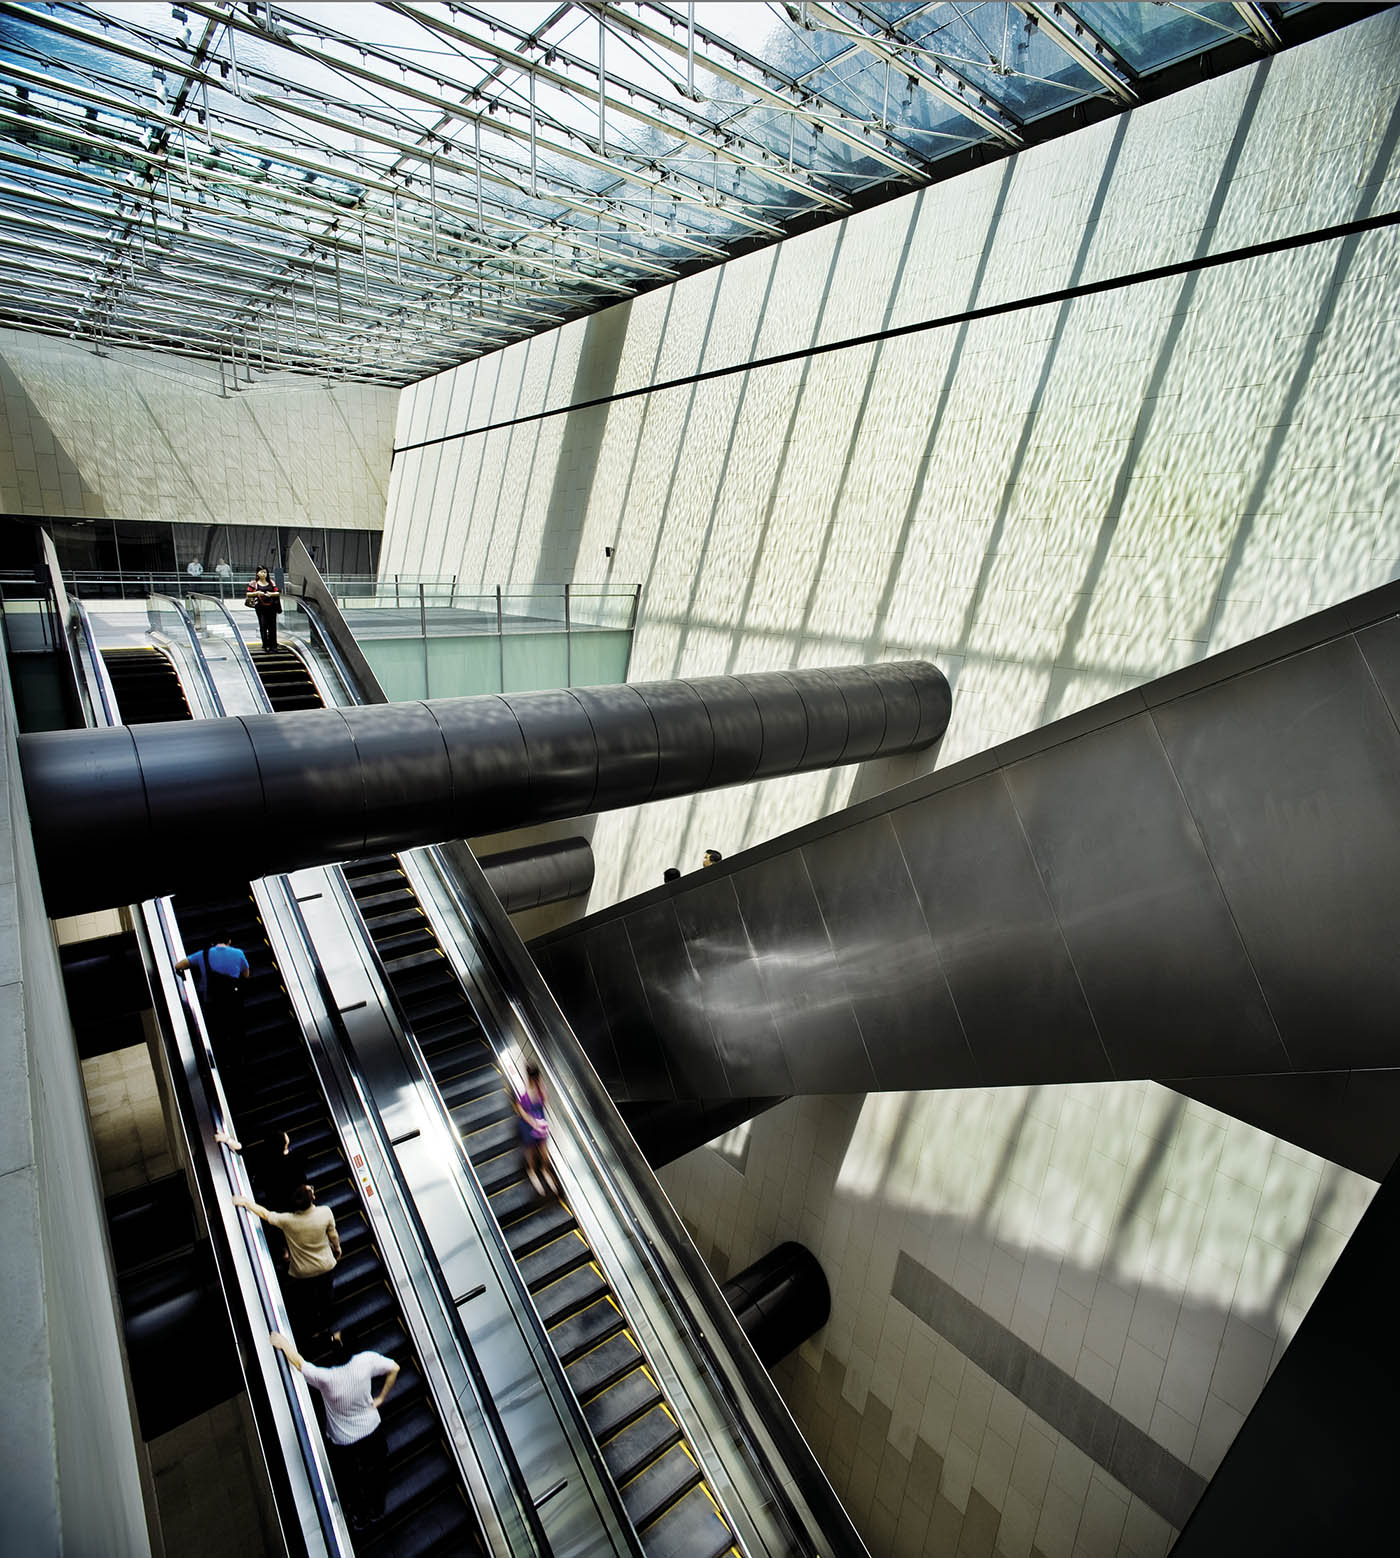 Bras Basah MRT Station - - Escalator